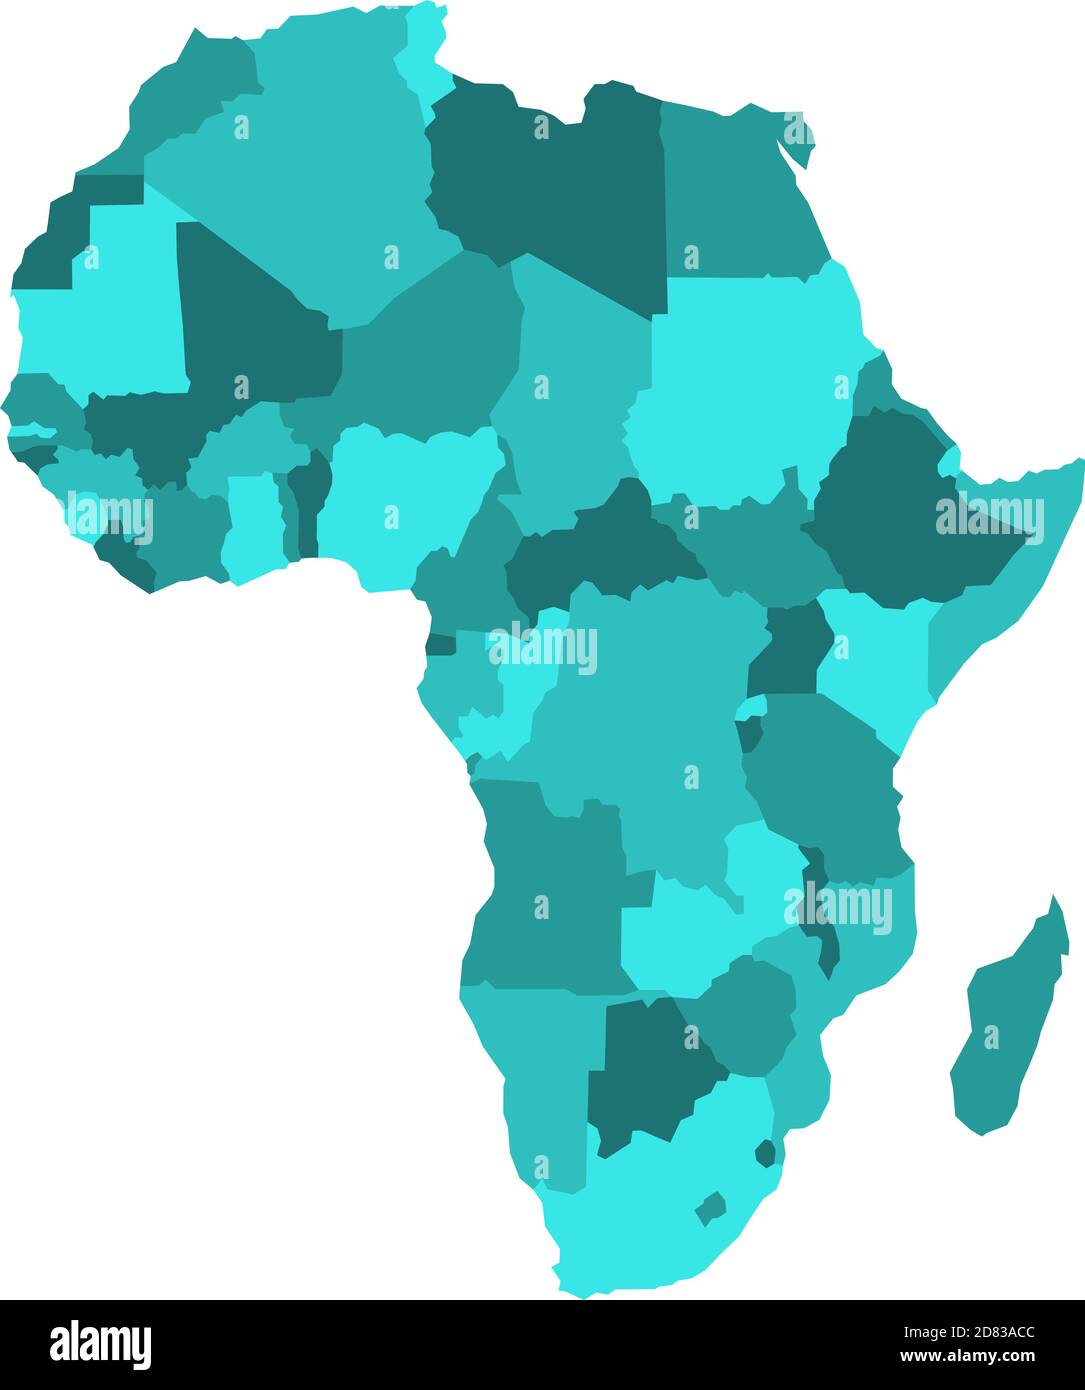 Mappa politica dell'Africa in quattro tonalità di blu turchese su sfondo bianco. Illustrazione vettoriale. Illustrazione Vettoriale